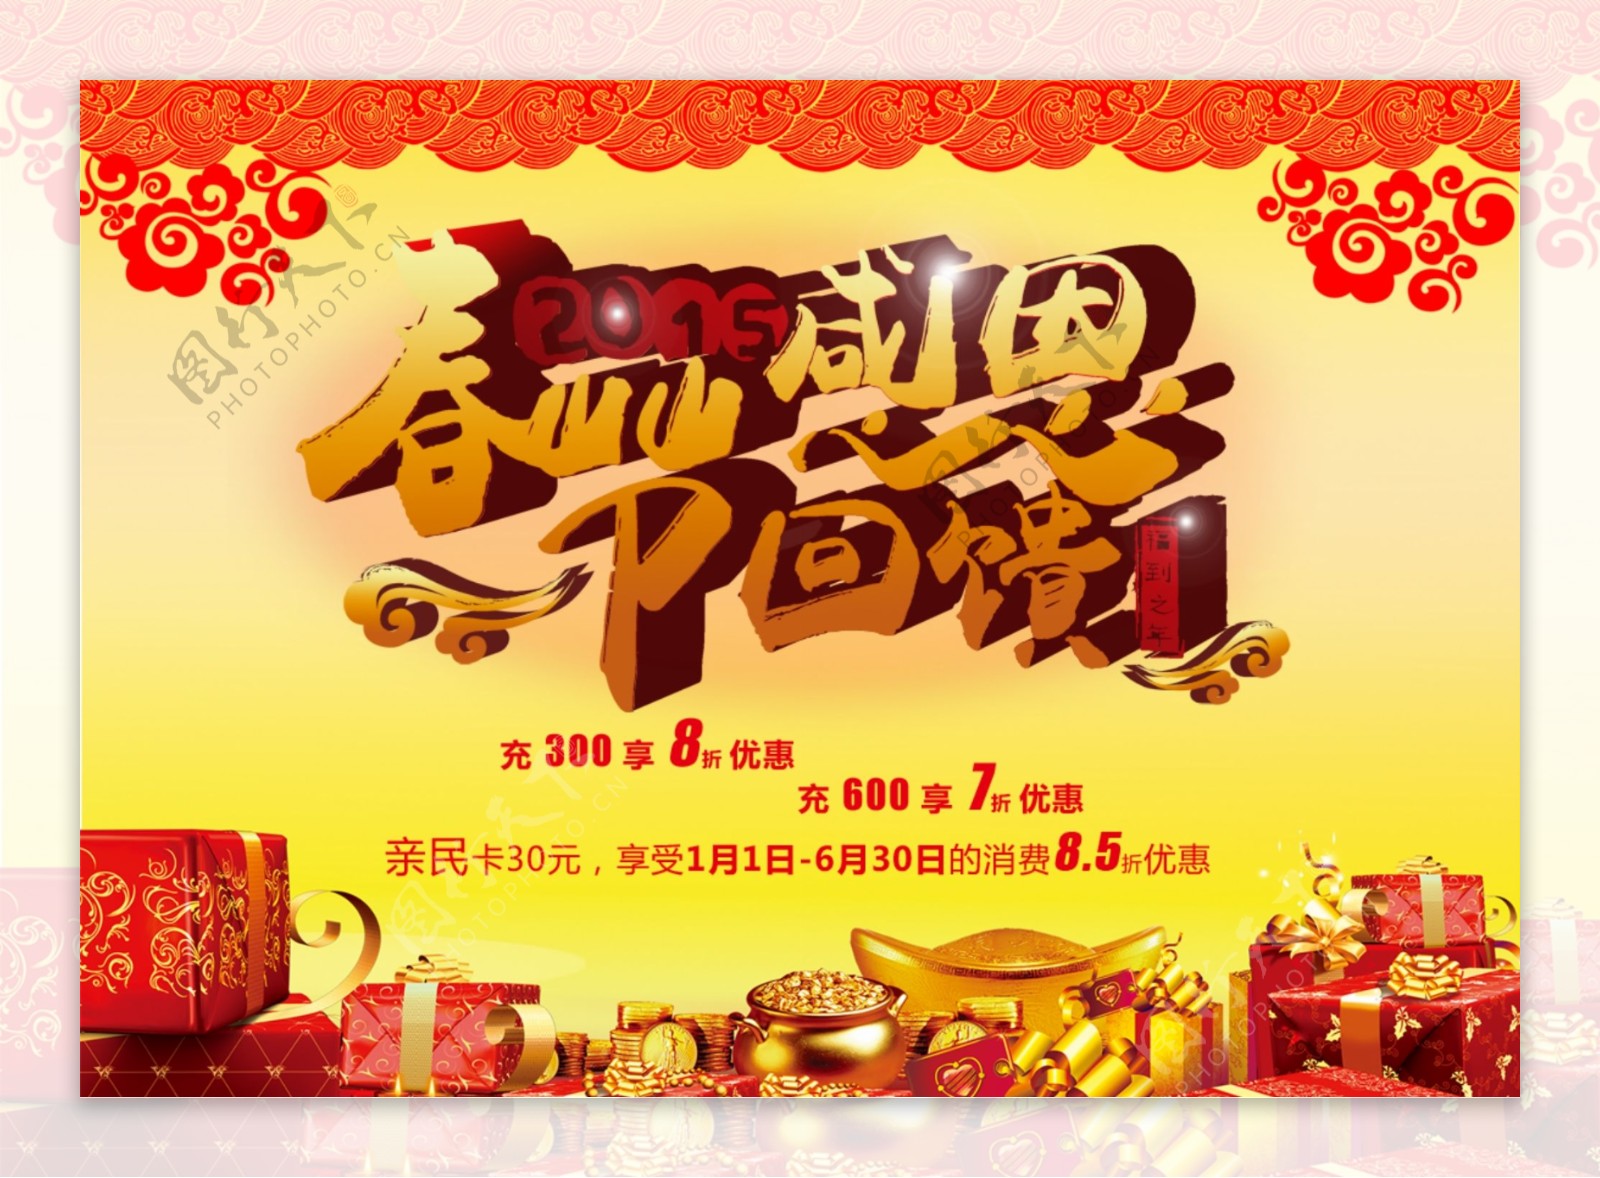 春节促销活动背景礼品赠送中国元素大集合